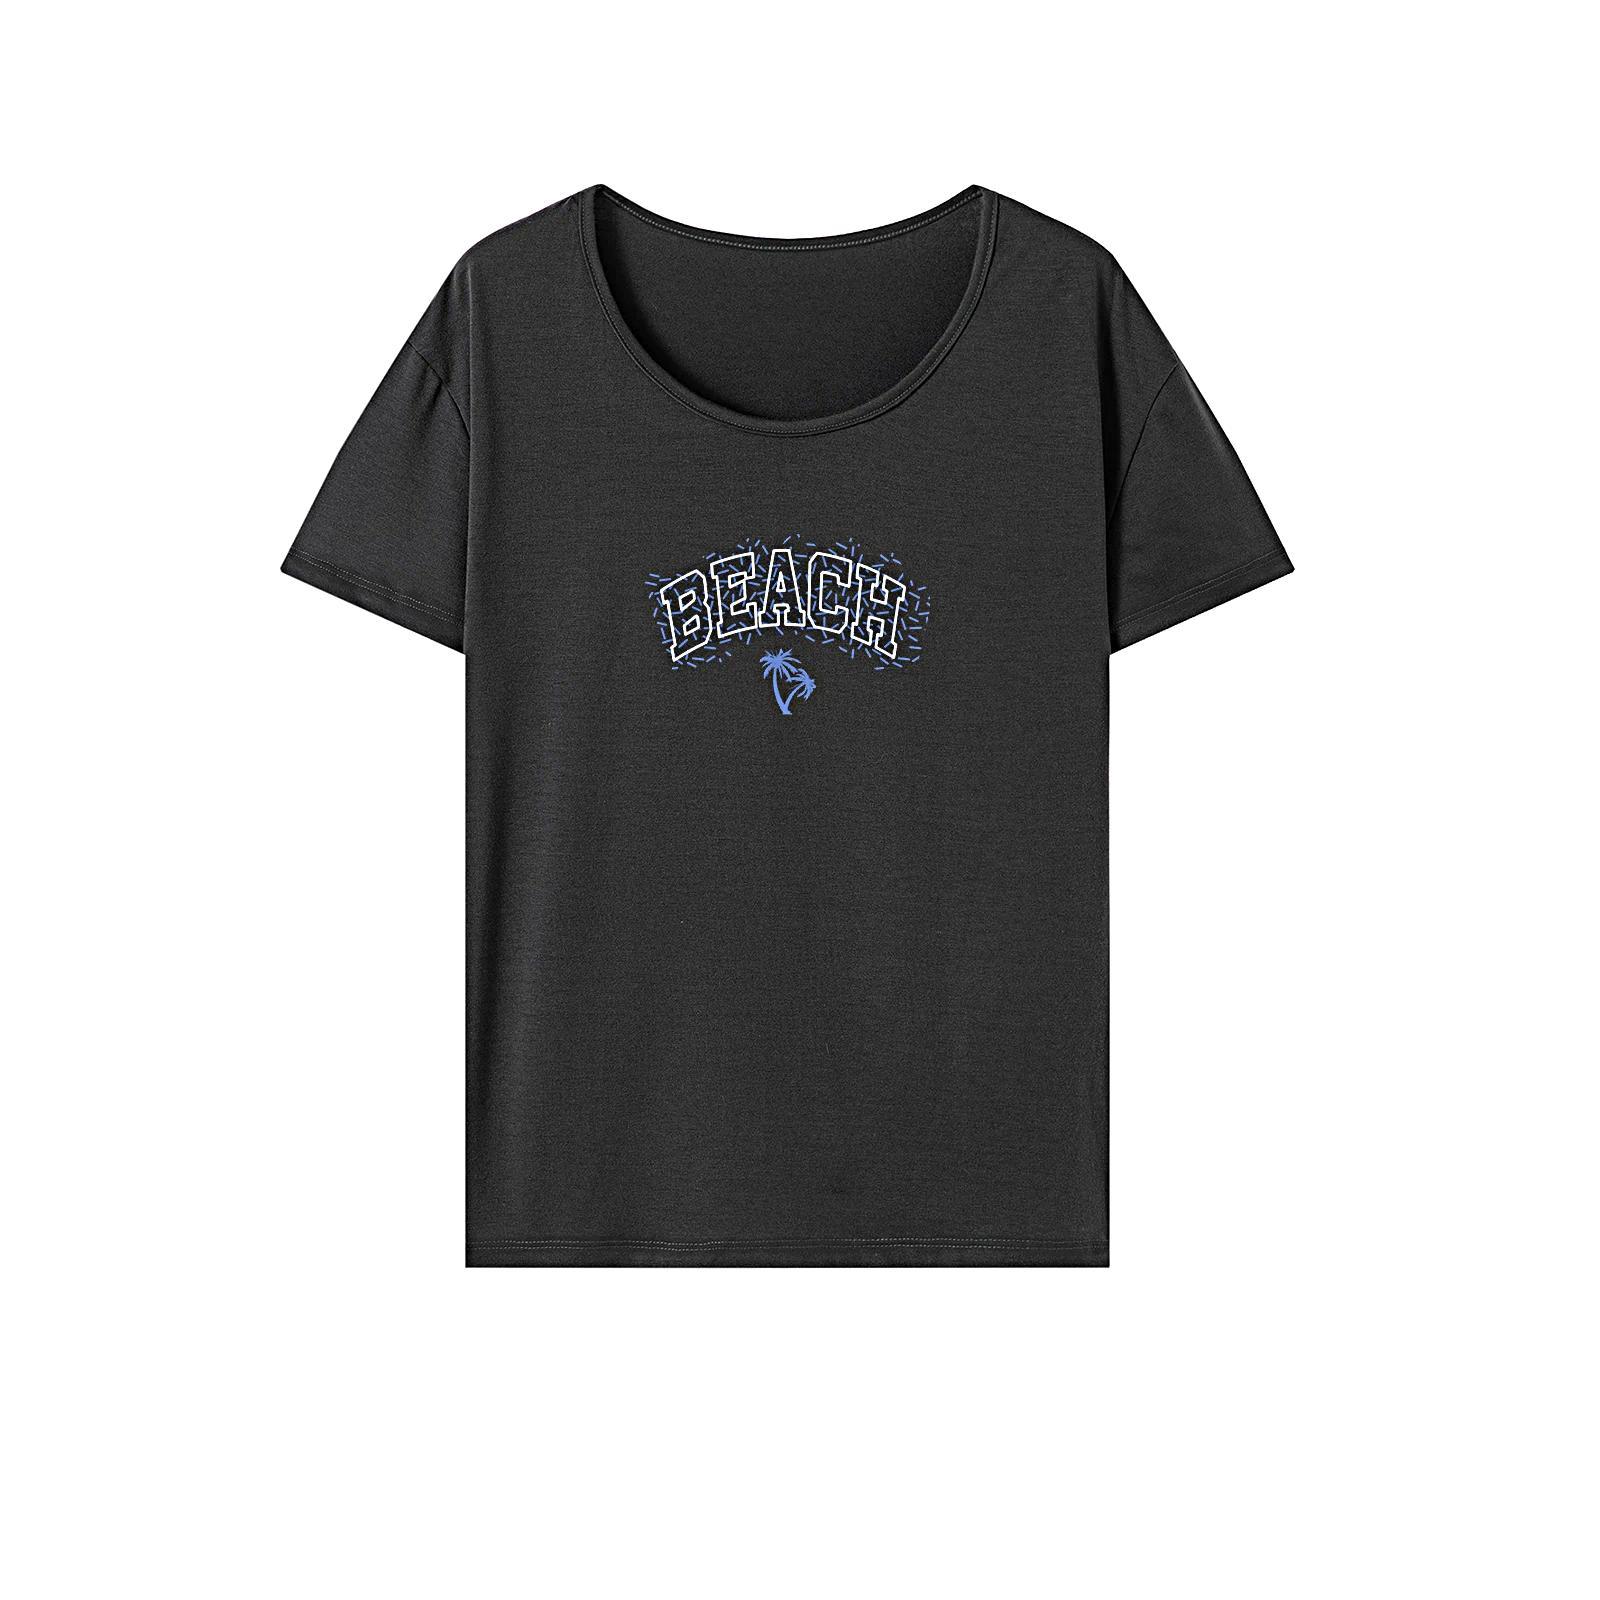 Women's T Shirt Summer Fashion Short Sleeve Top for Camping Walking Shopping XL